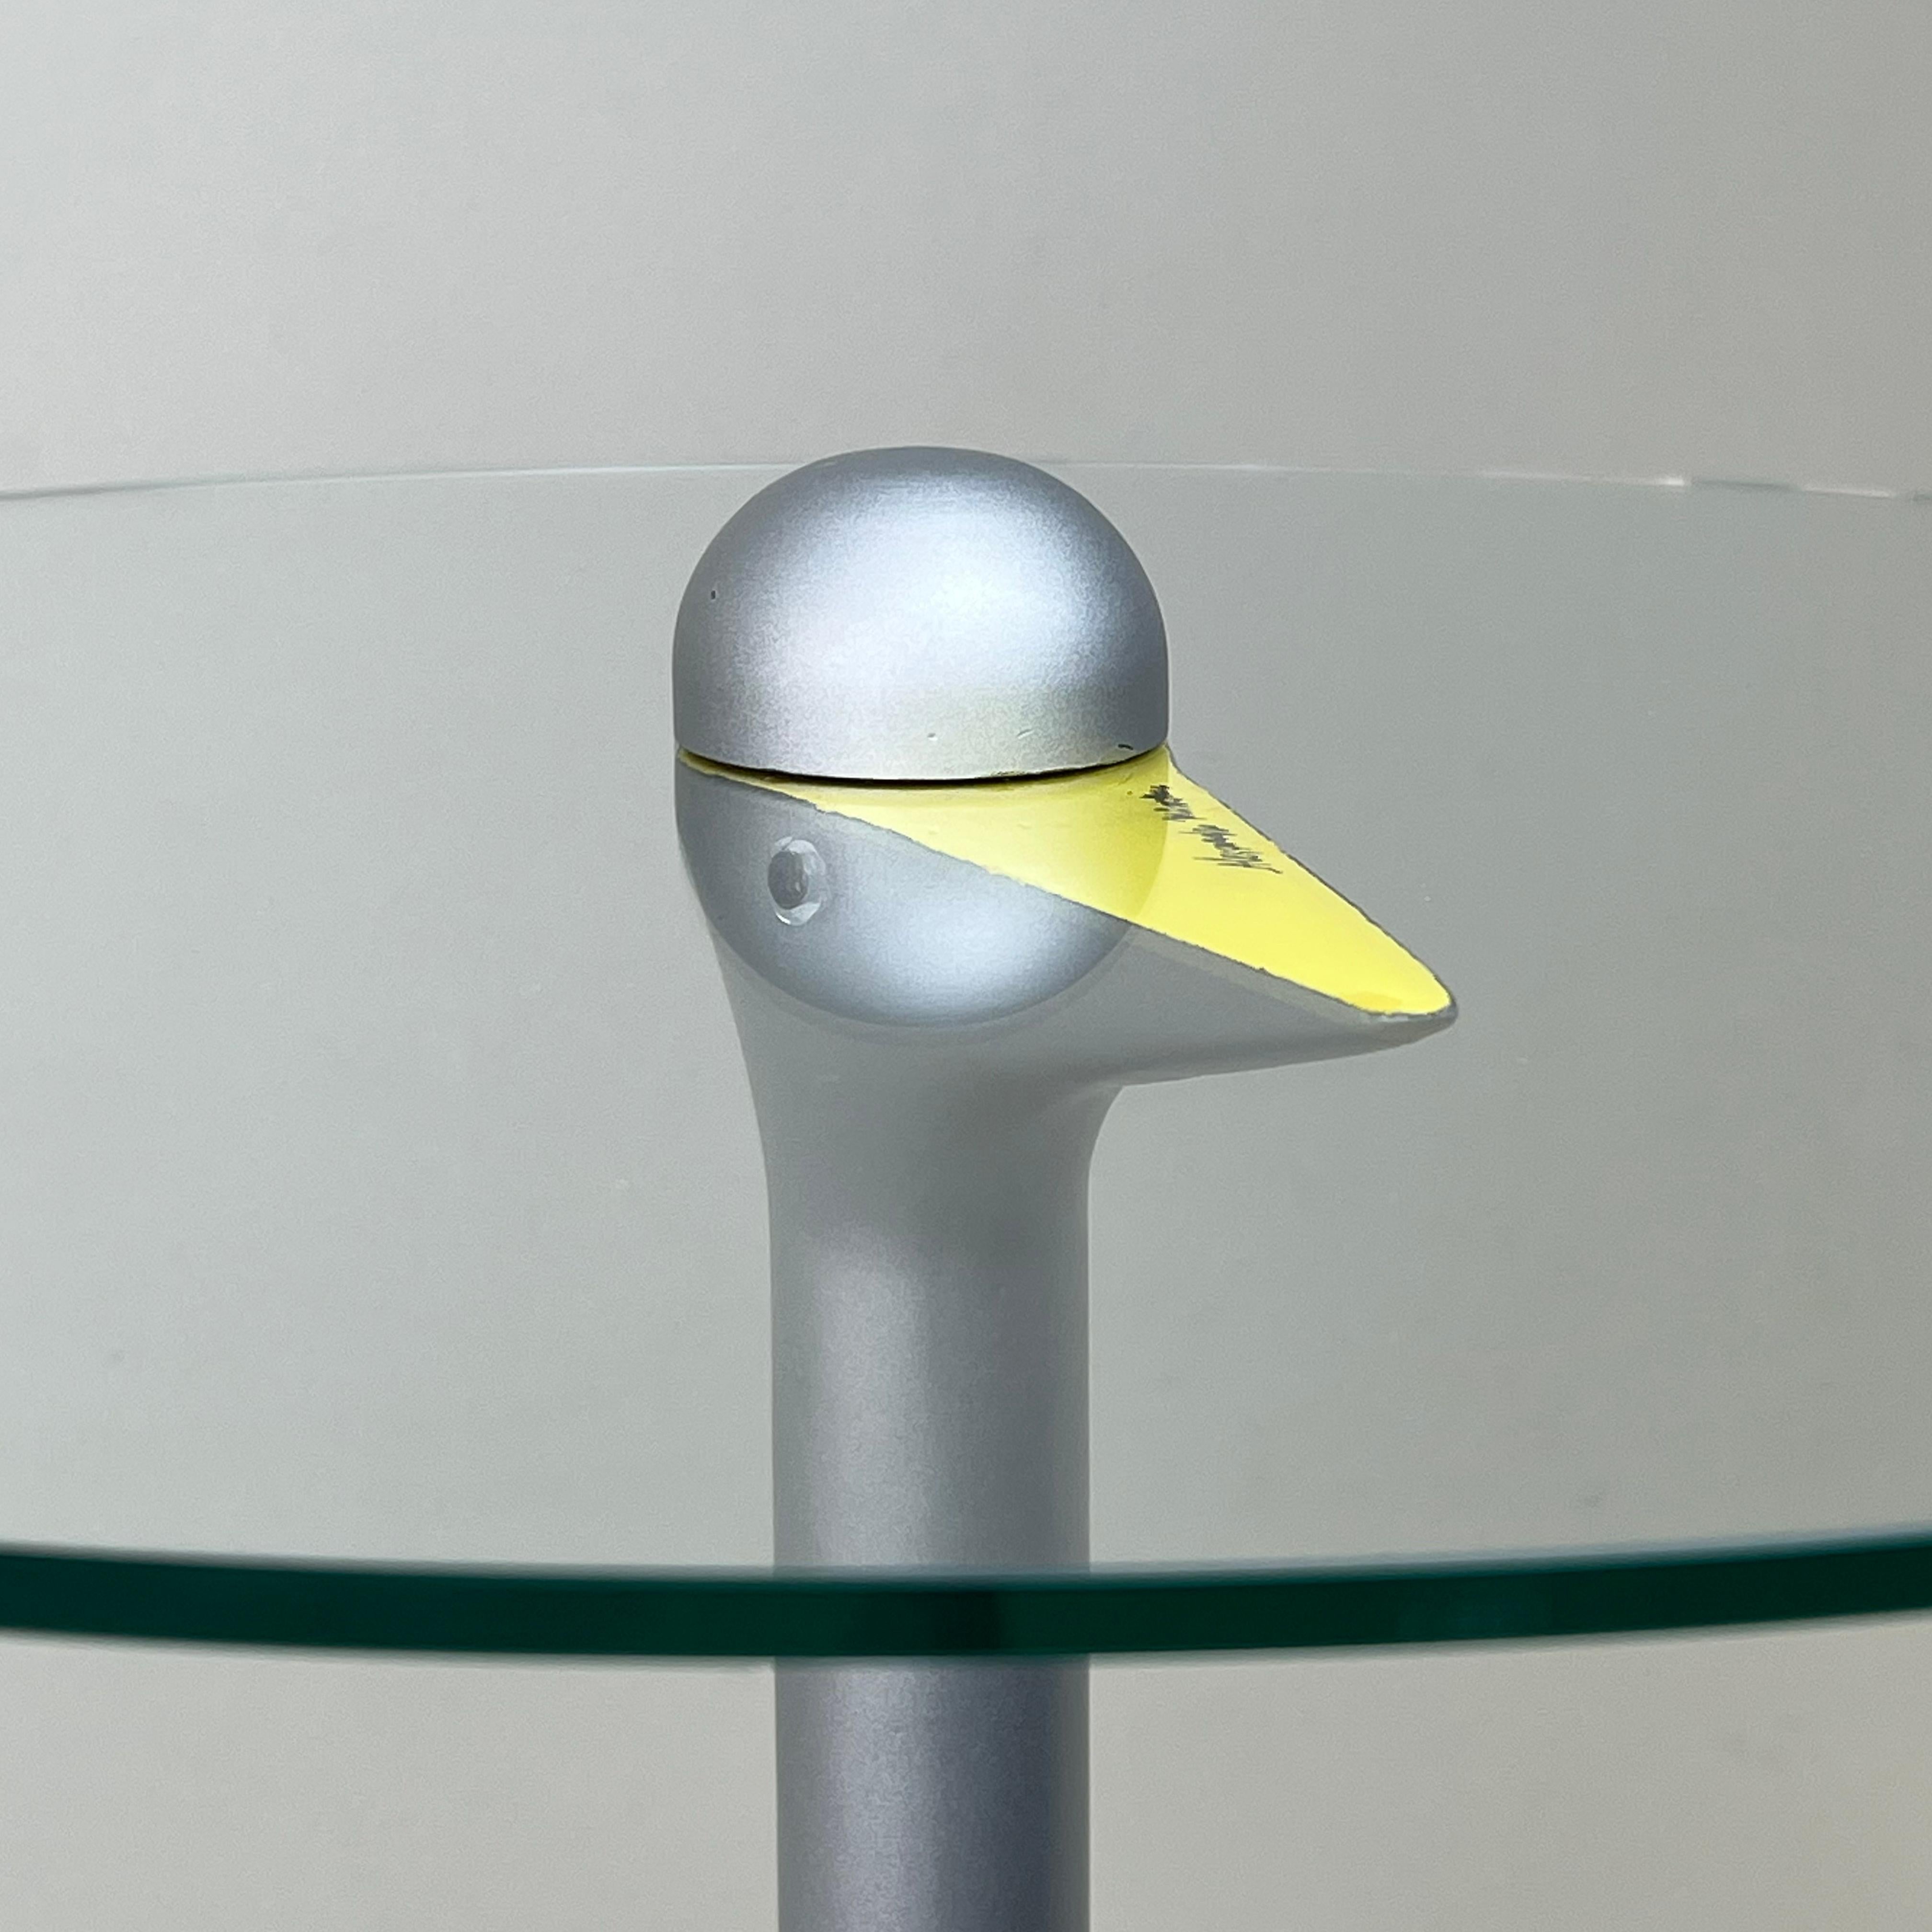 Aluminum Italian Postmodern “Sirfo” Side Table, Alessandro Mendini for Zanotta, 1980s For Sale